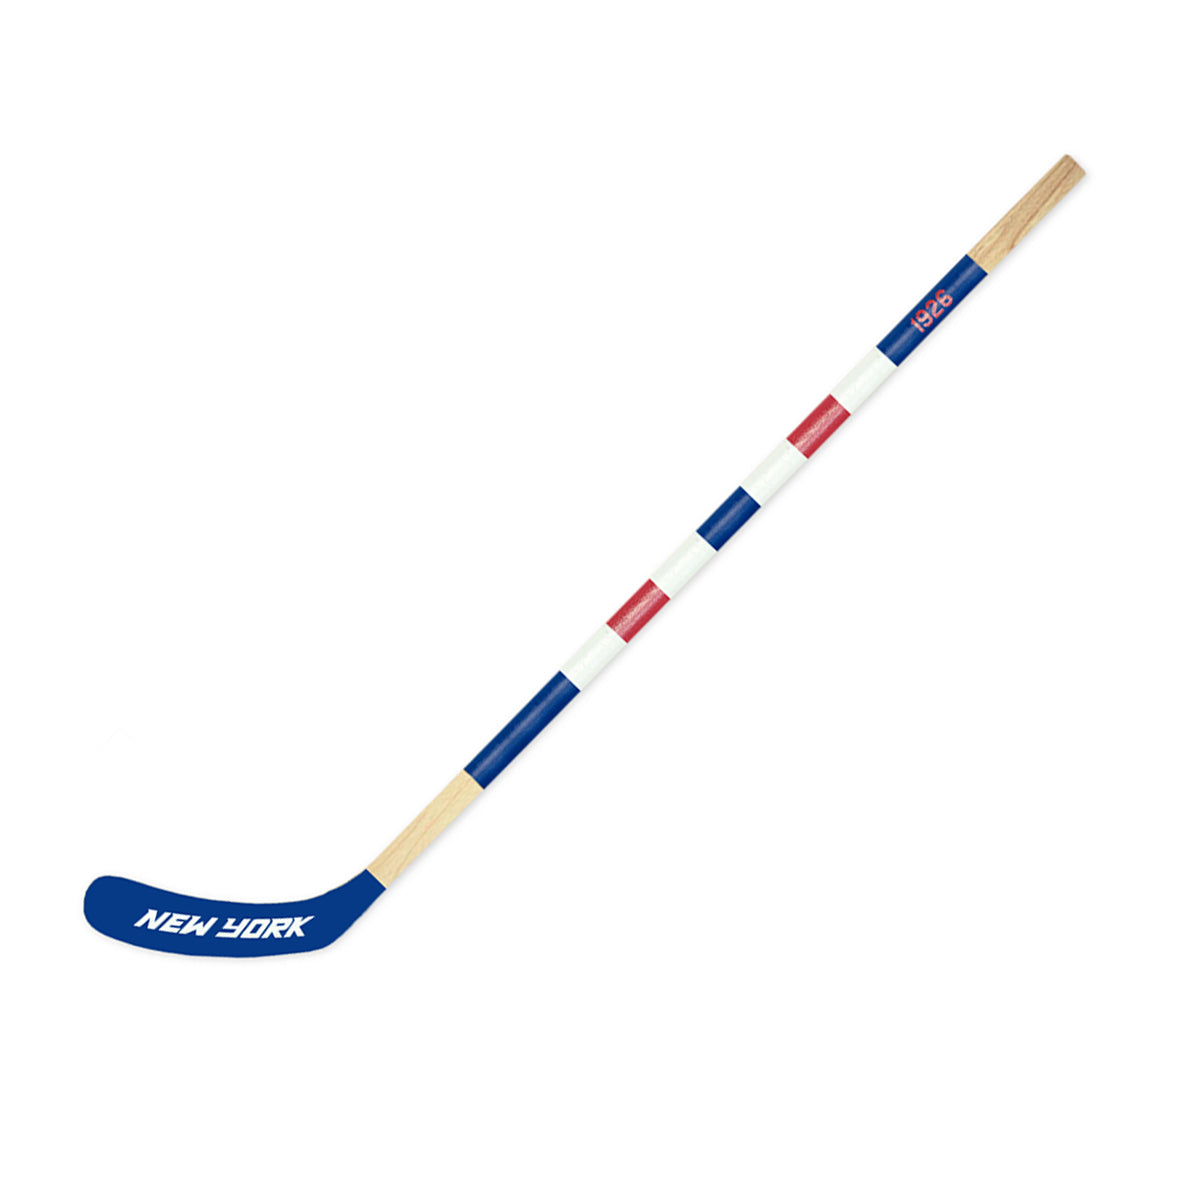 New York Mitchell Hockey Stick